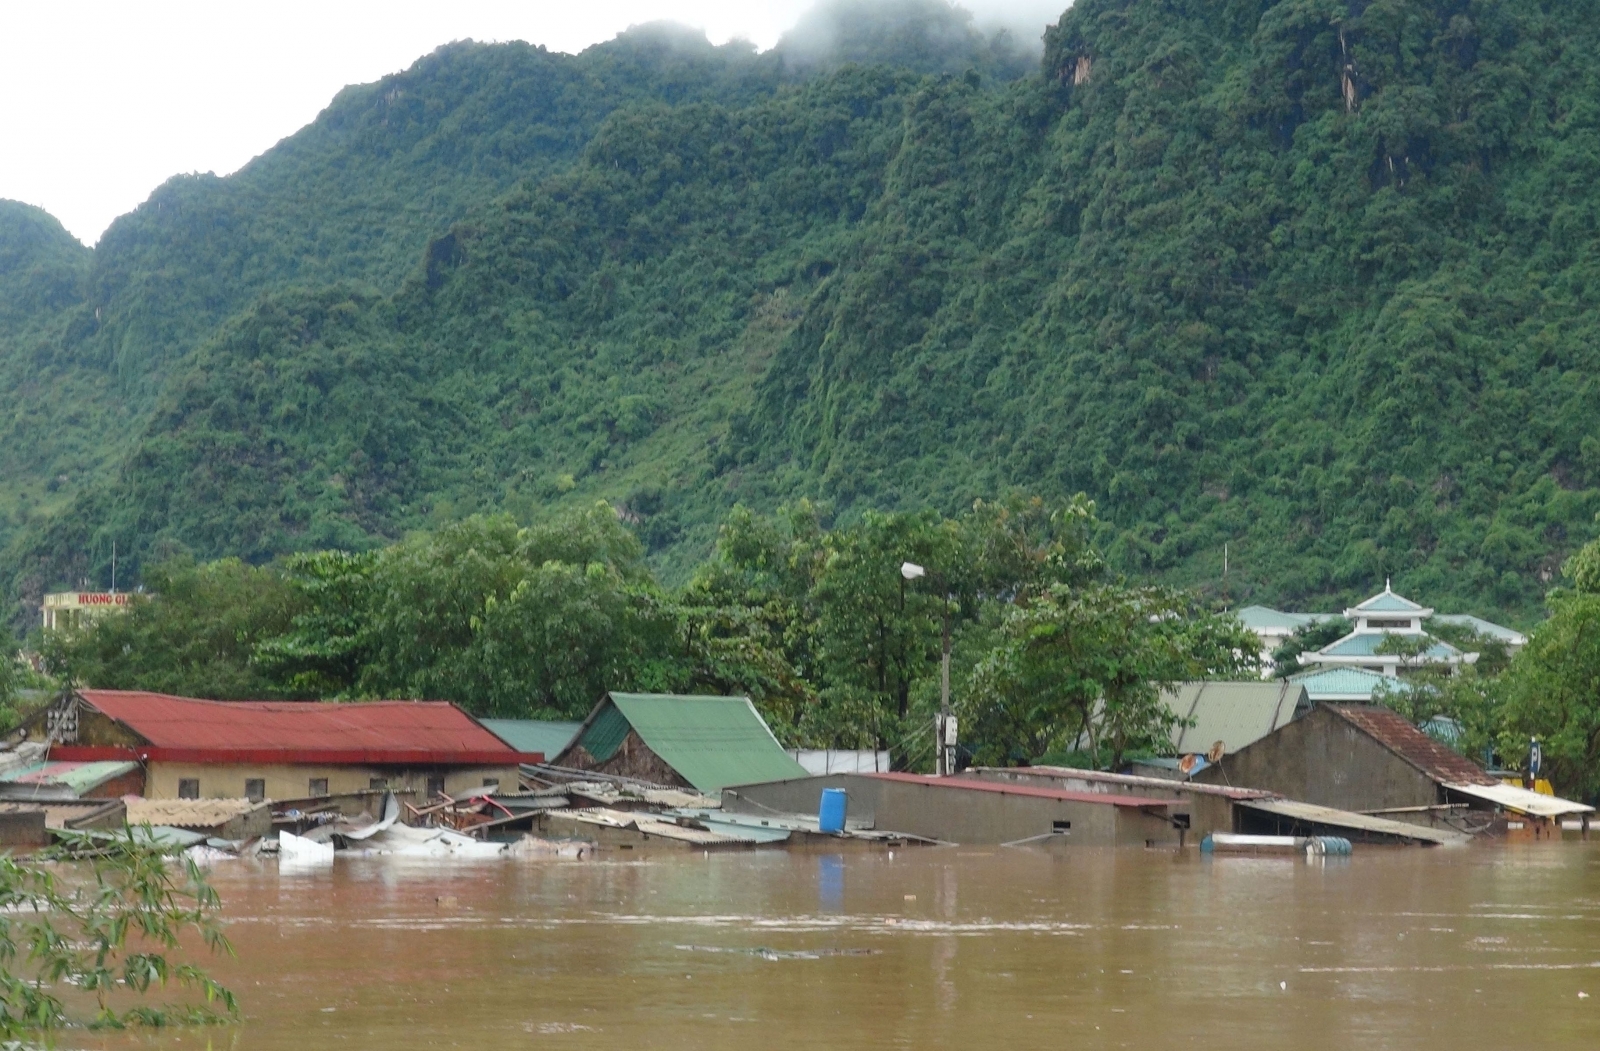 Vietnam floods